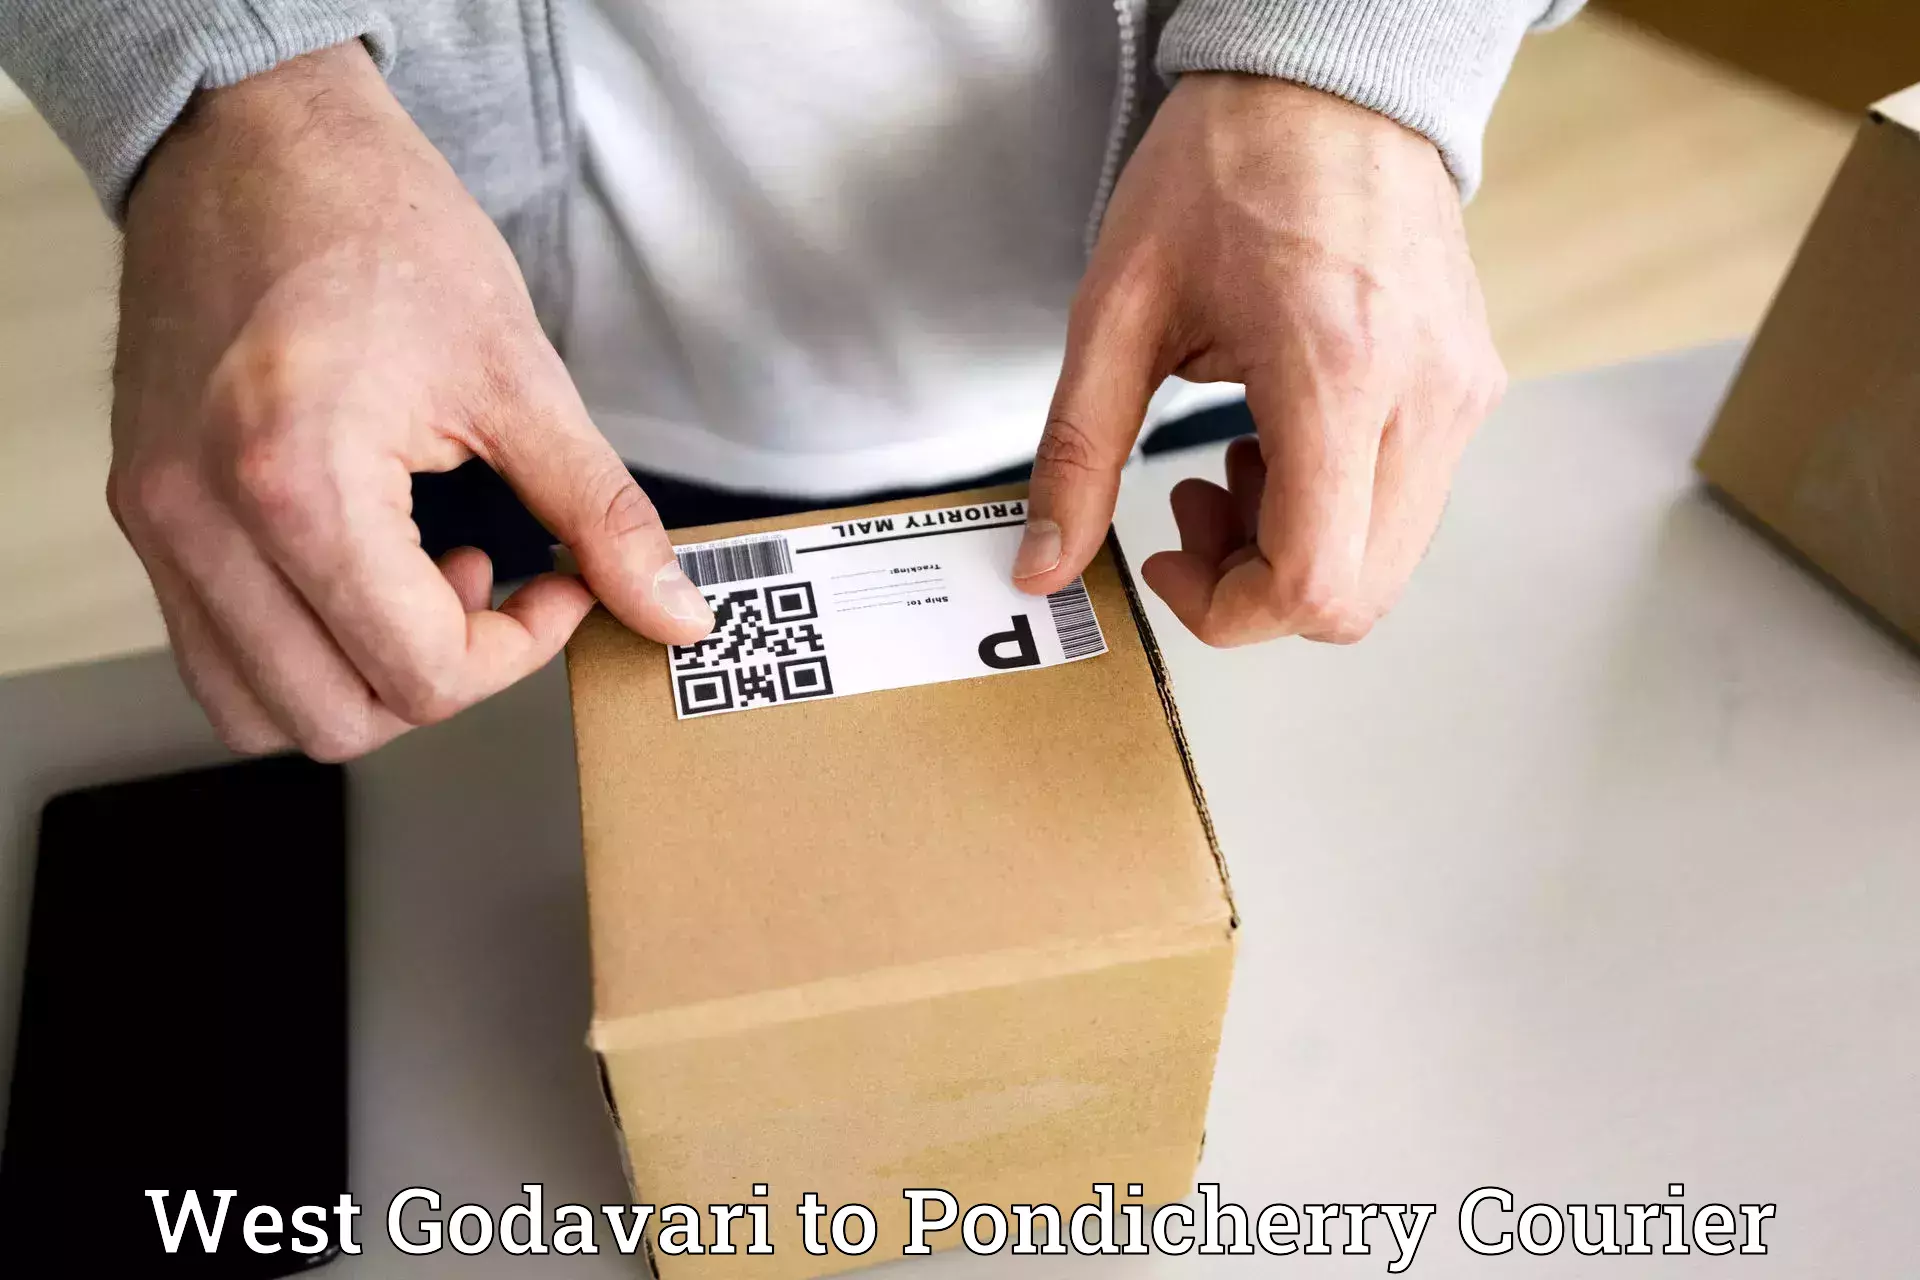 Customer-centric shipping West Godavari to Pondicherry